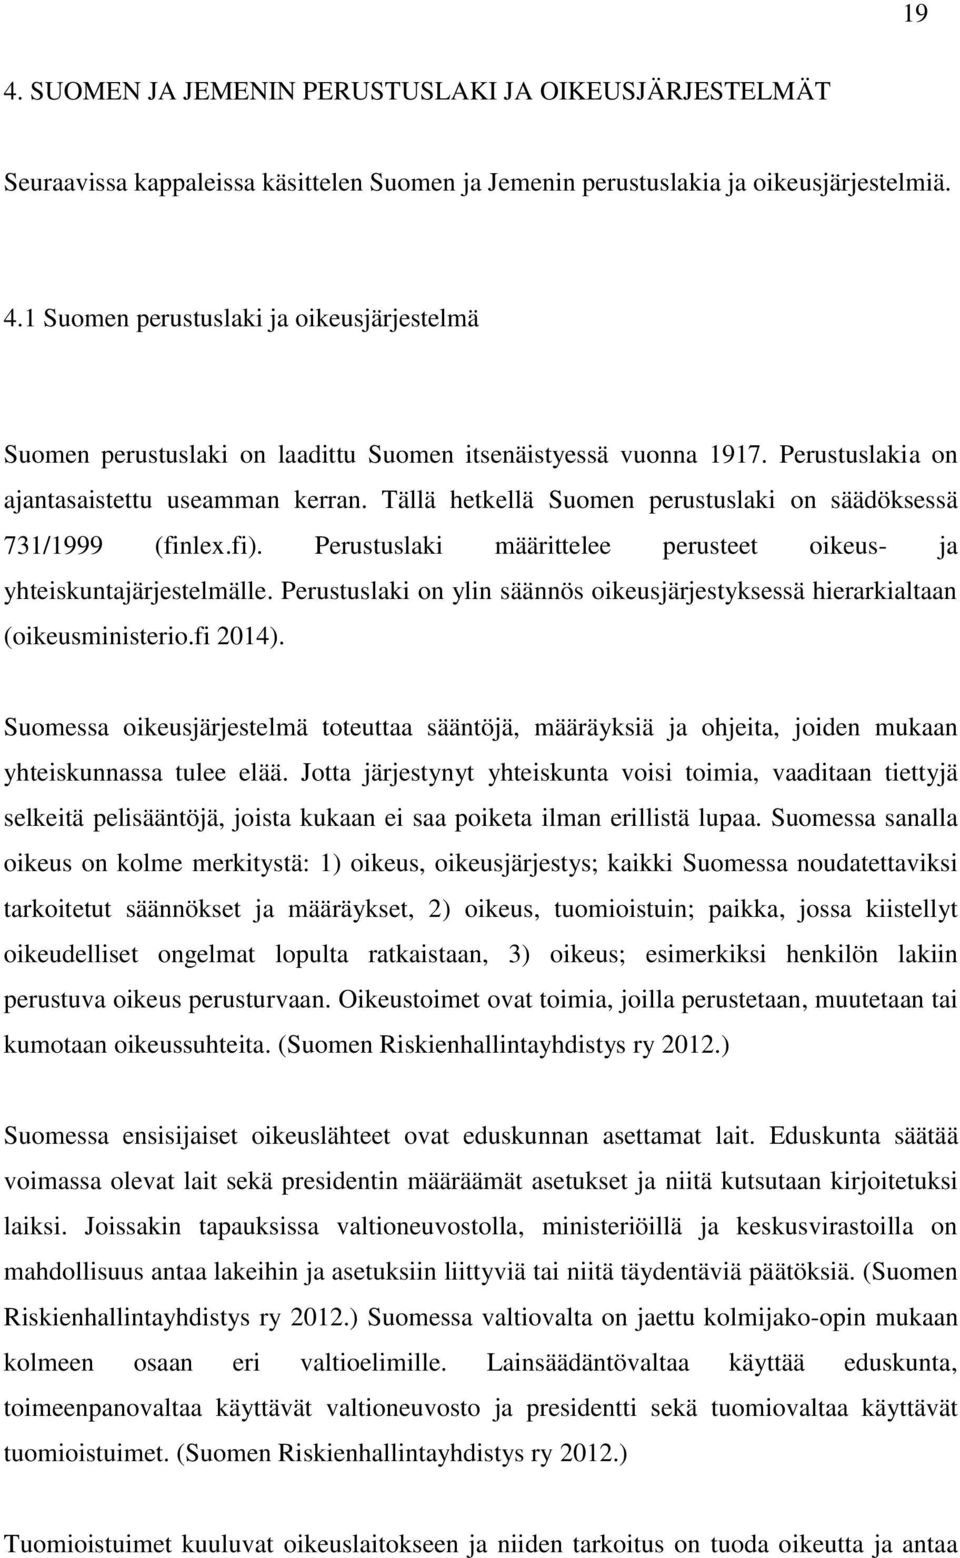 Perustuslaki on ylin säännös oikeusjärjestyksessä hierarkialtaan (oikeusministerio.fi 2014).